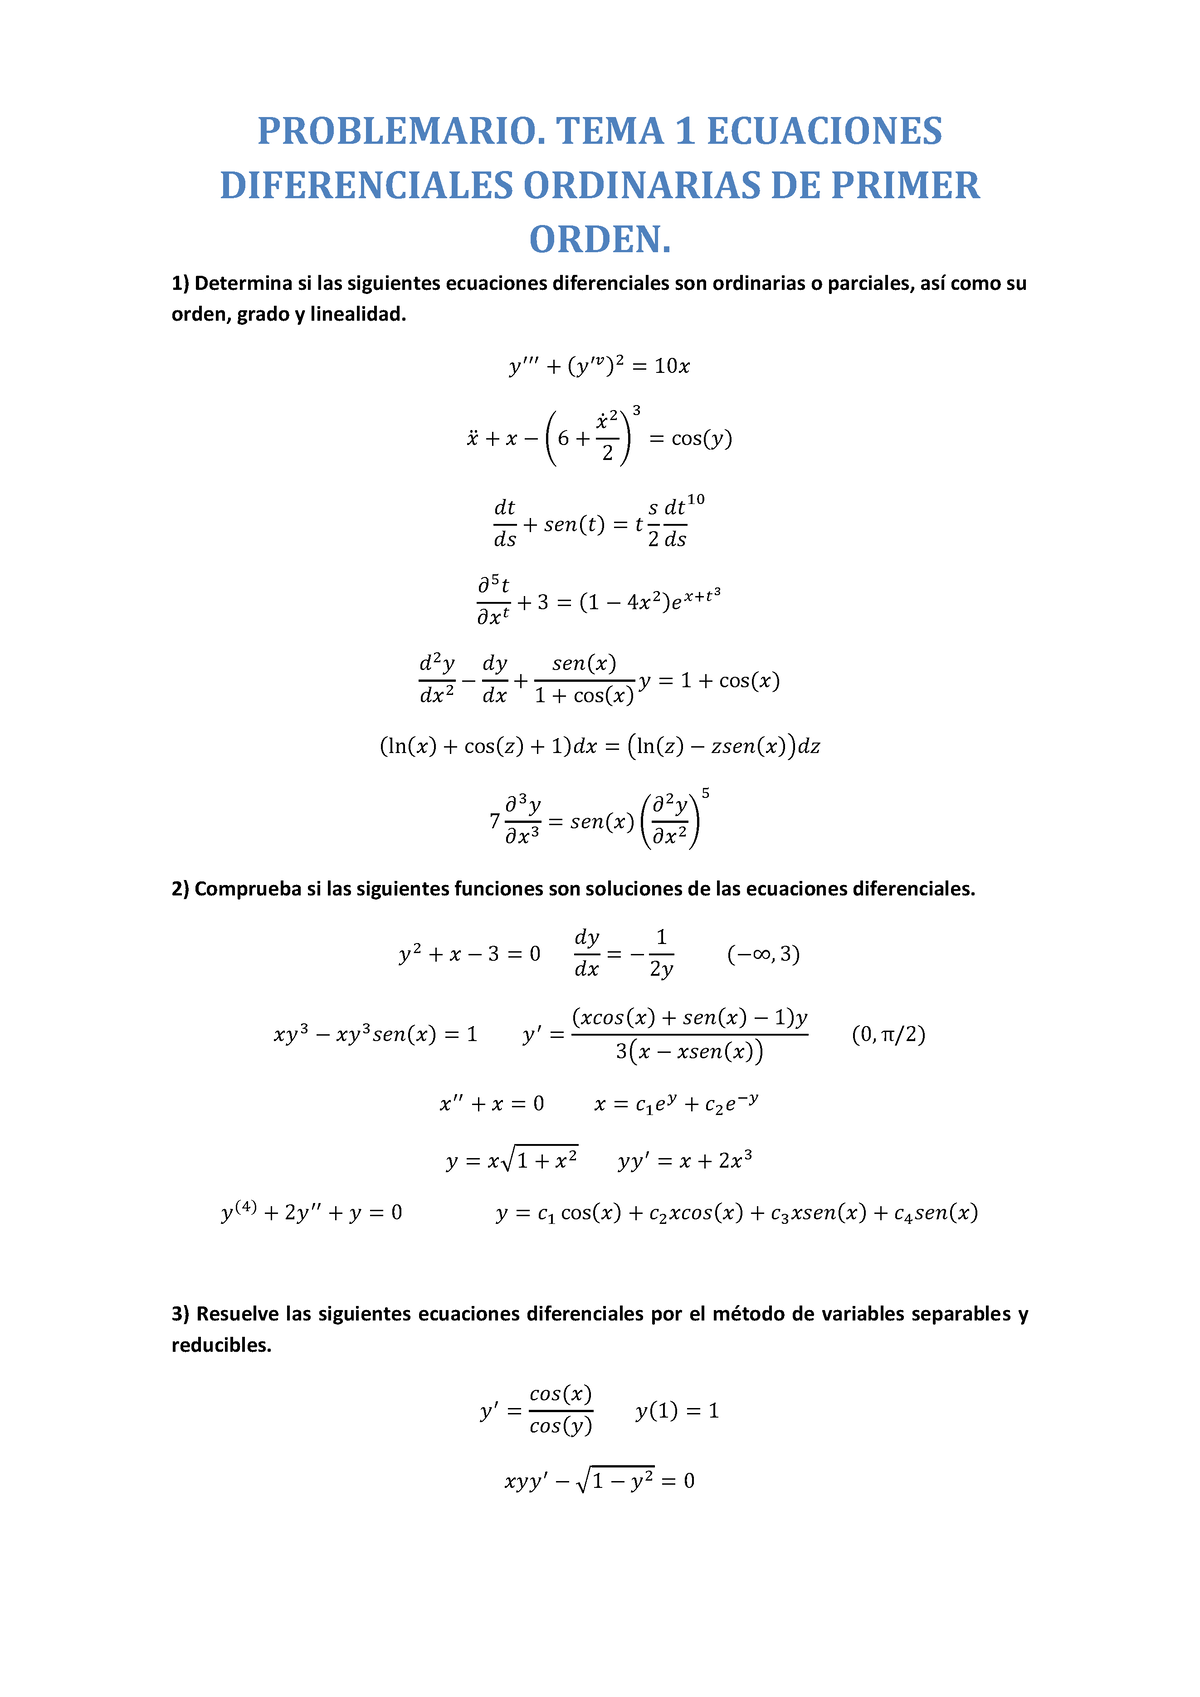 Problemario T1 Ed Problemario Tema 1 Ecuaciones Diferenciales Ordinarias De Primer Orden 3600